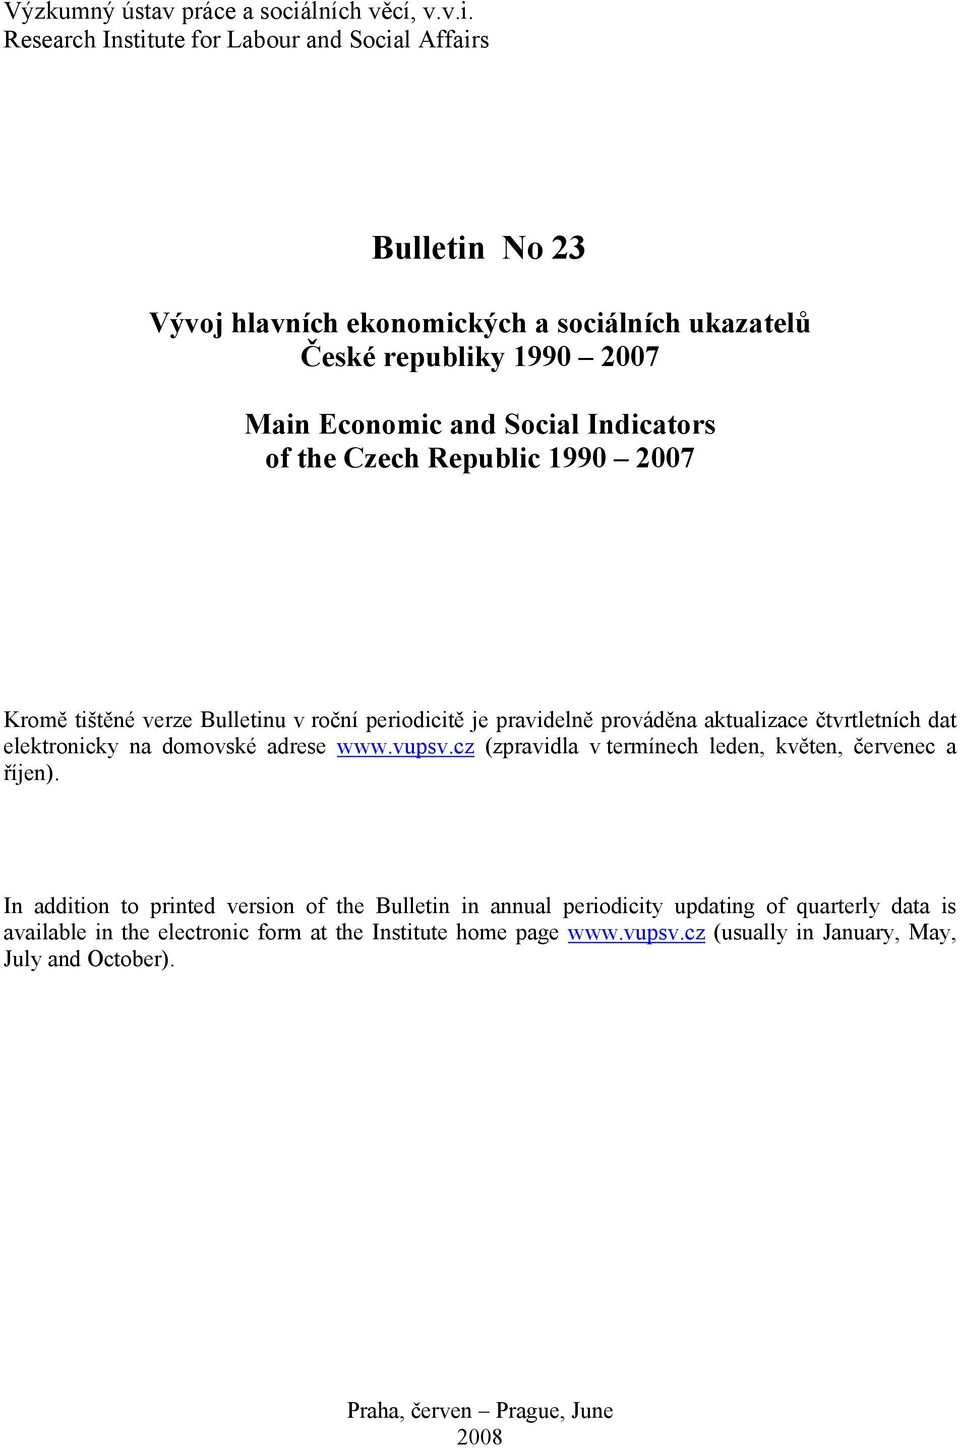 Research Institute for Labour and Social Affairs Bulletin No 23 Vývoj hlavních ekonomických a sociálních ukazatelů České republiky 1990 2007 Main Economic and Social Indicators